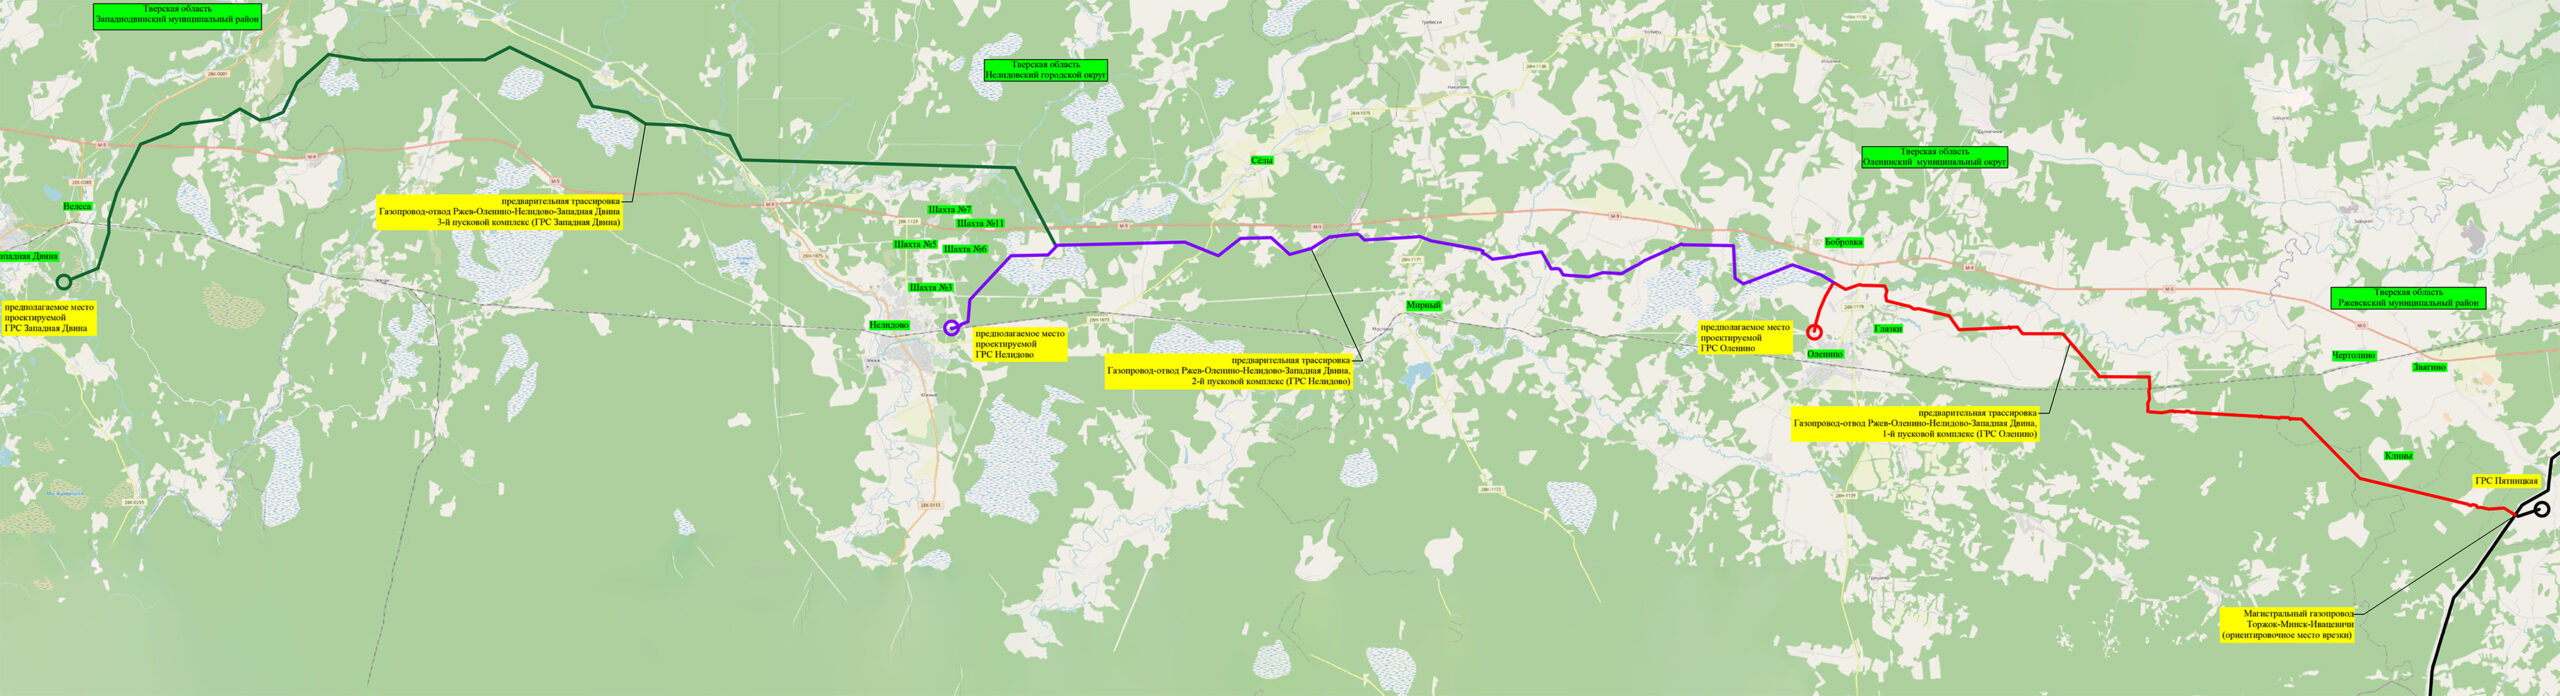 Ситуационный план по проекту «Газопровод-отвод Ржев-Оленино-Нелидово-Западная Двина»